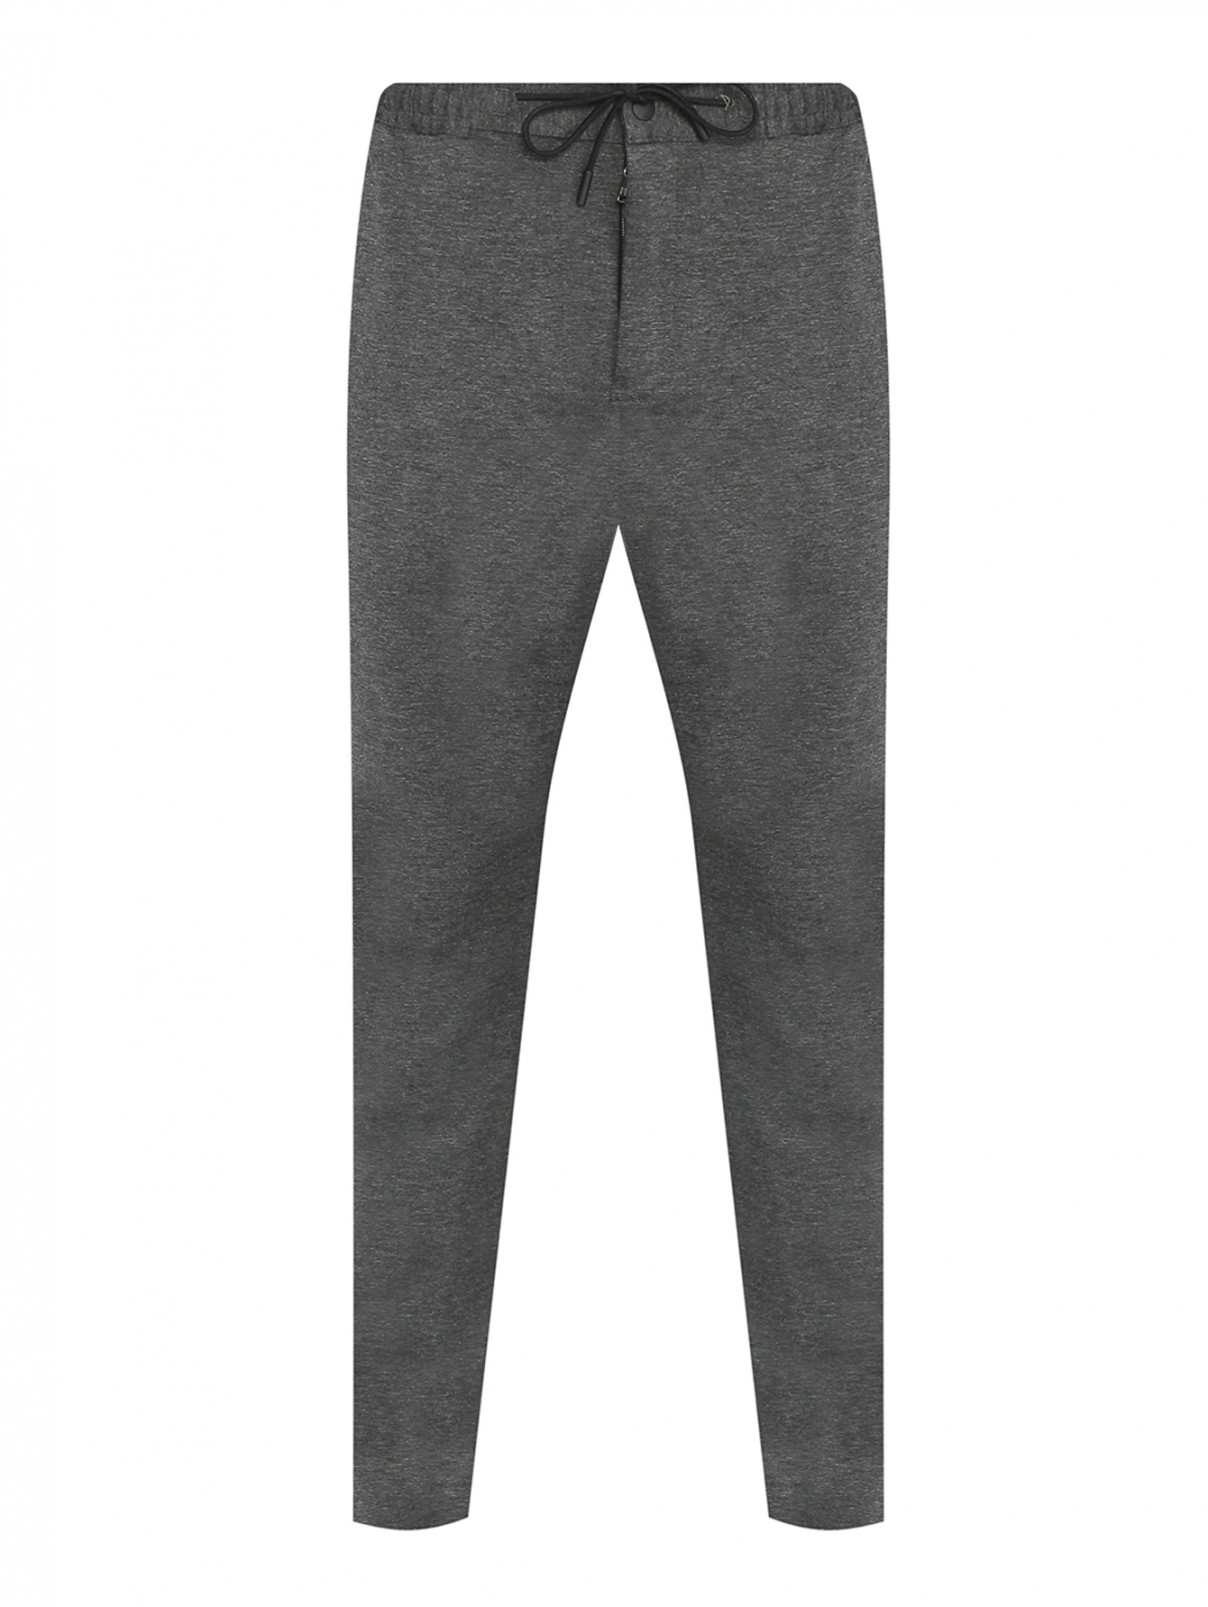 Трикотажные брюки на резинке с карманами PT Torino  –  Общий вид  – Цвет:  Серый